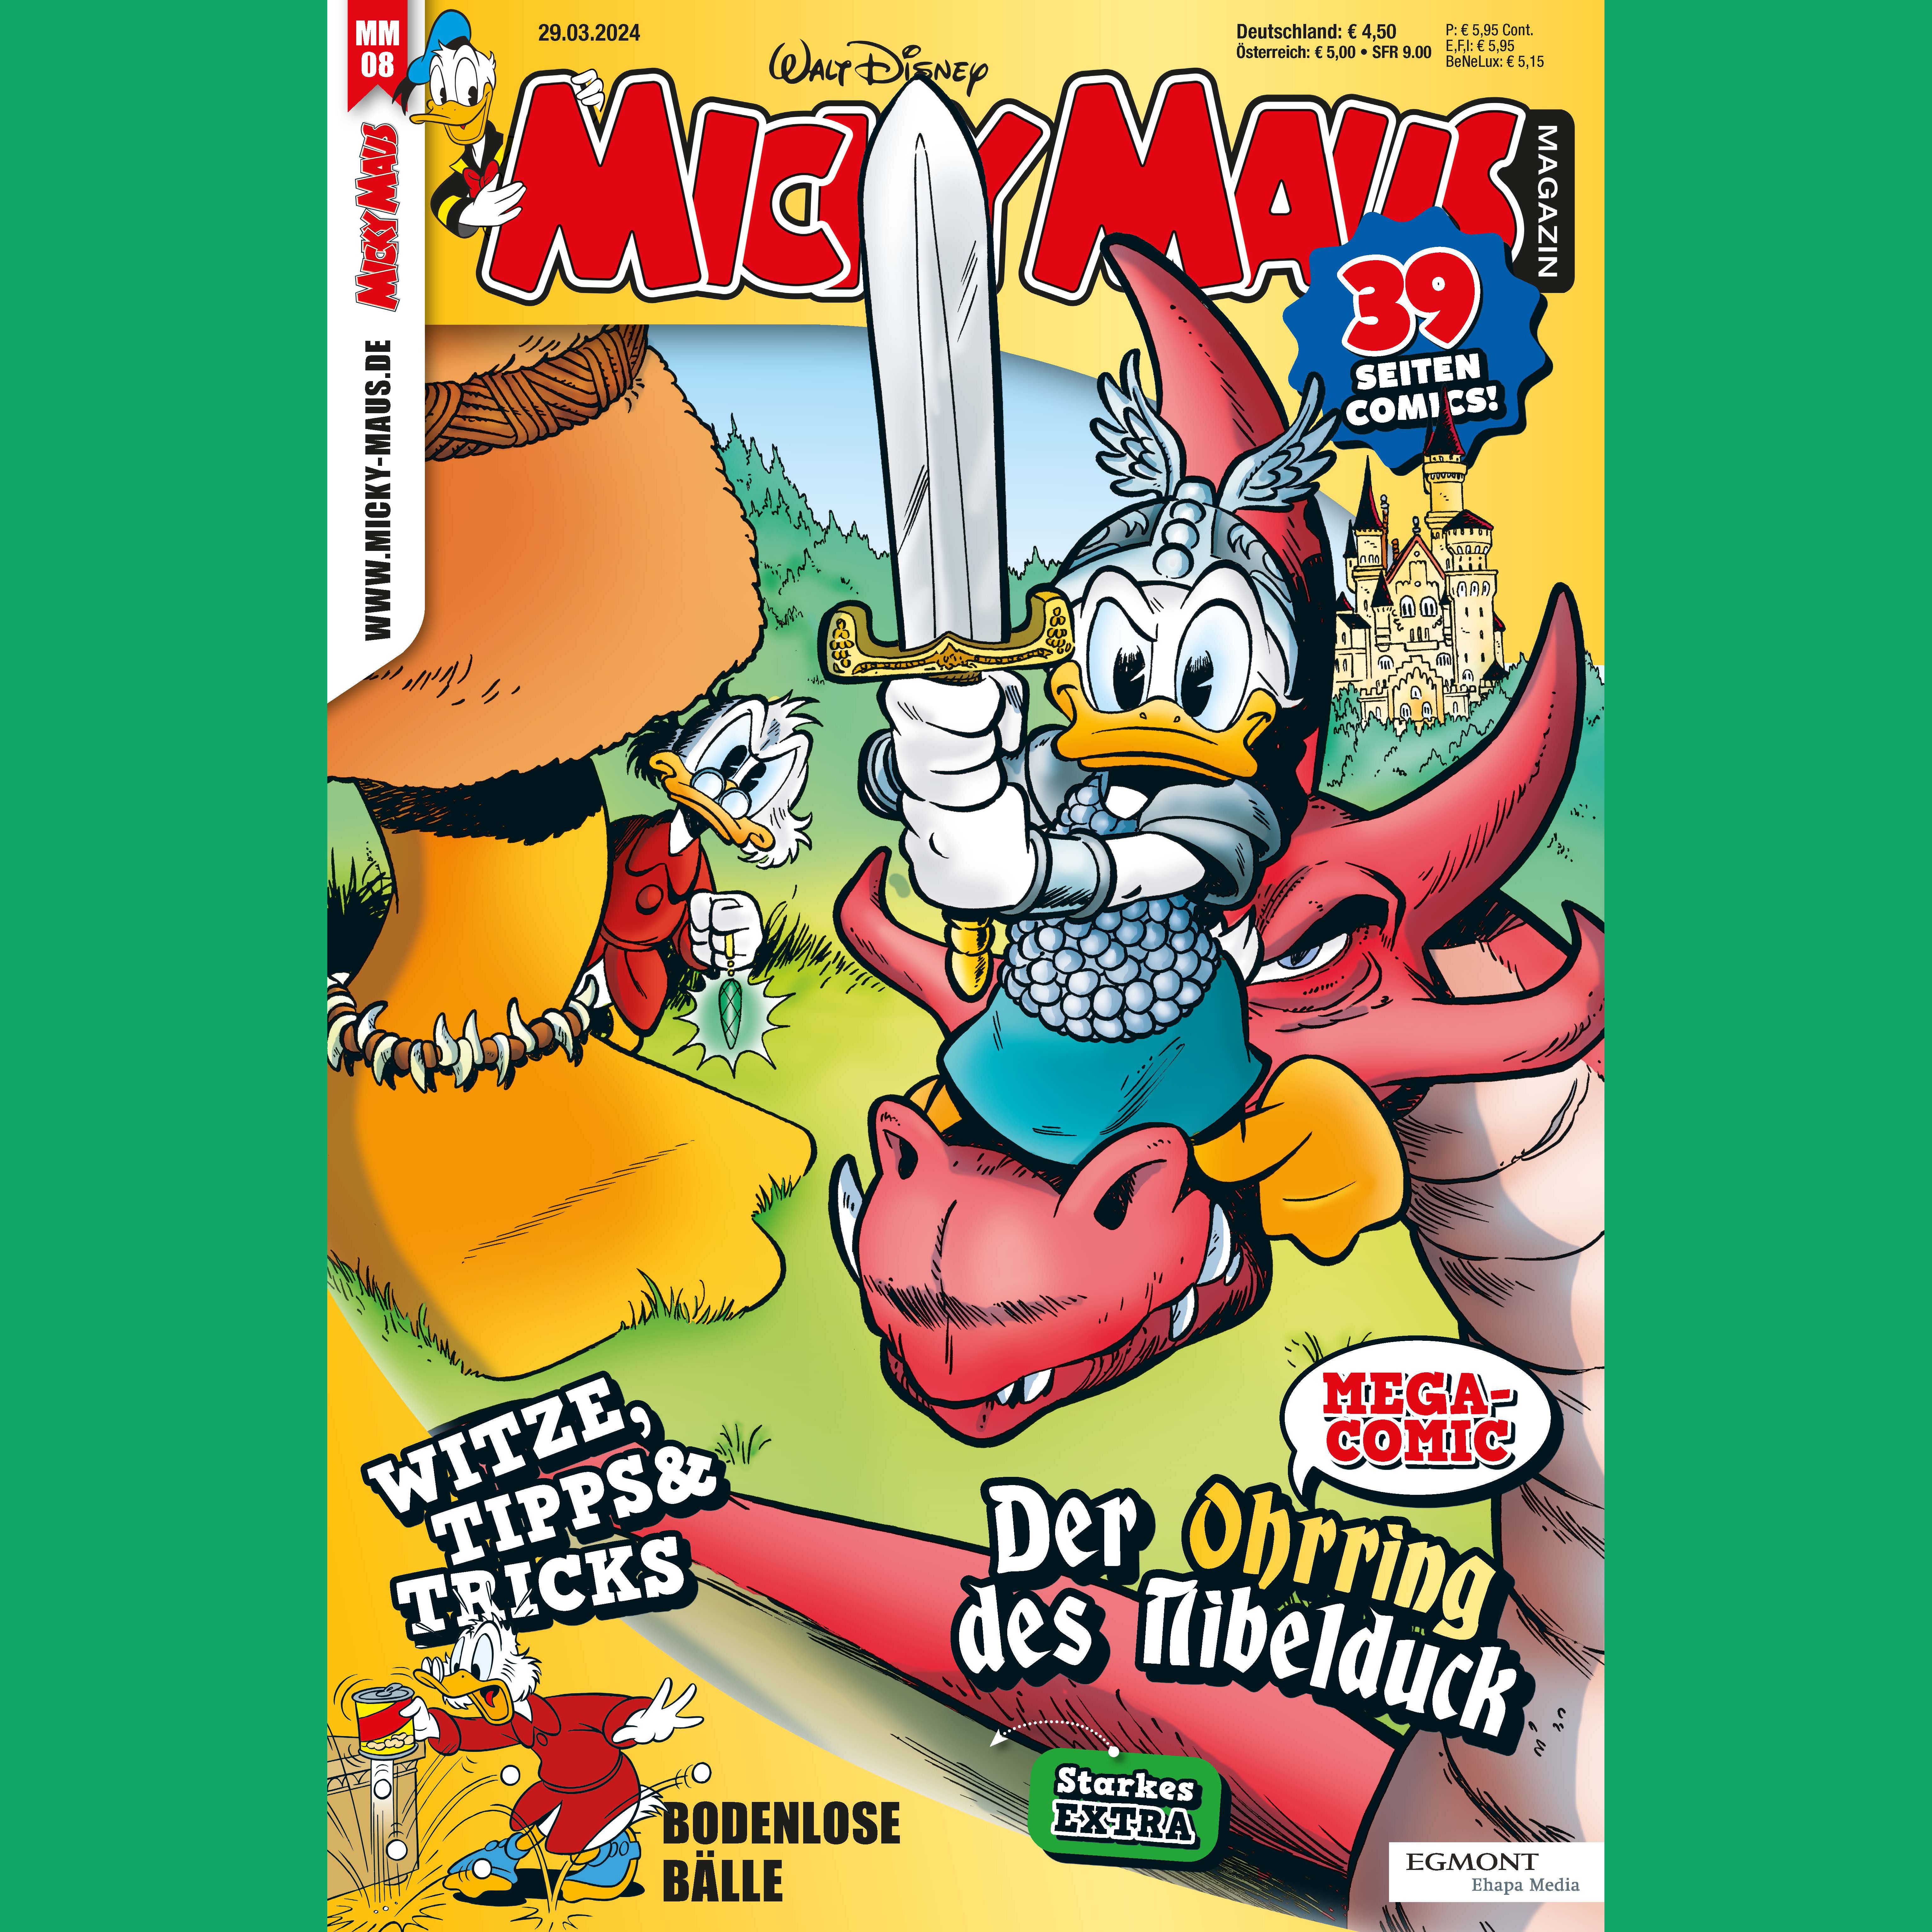 Dagobert Duck erlebt ein episches Nibelungen-Abenteuer im Micky Maus-Magazin!